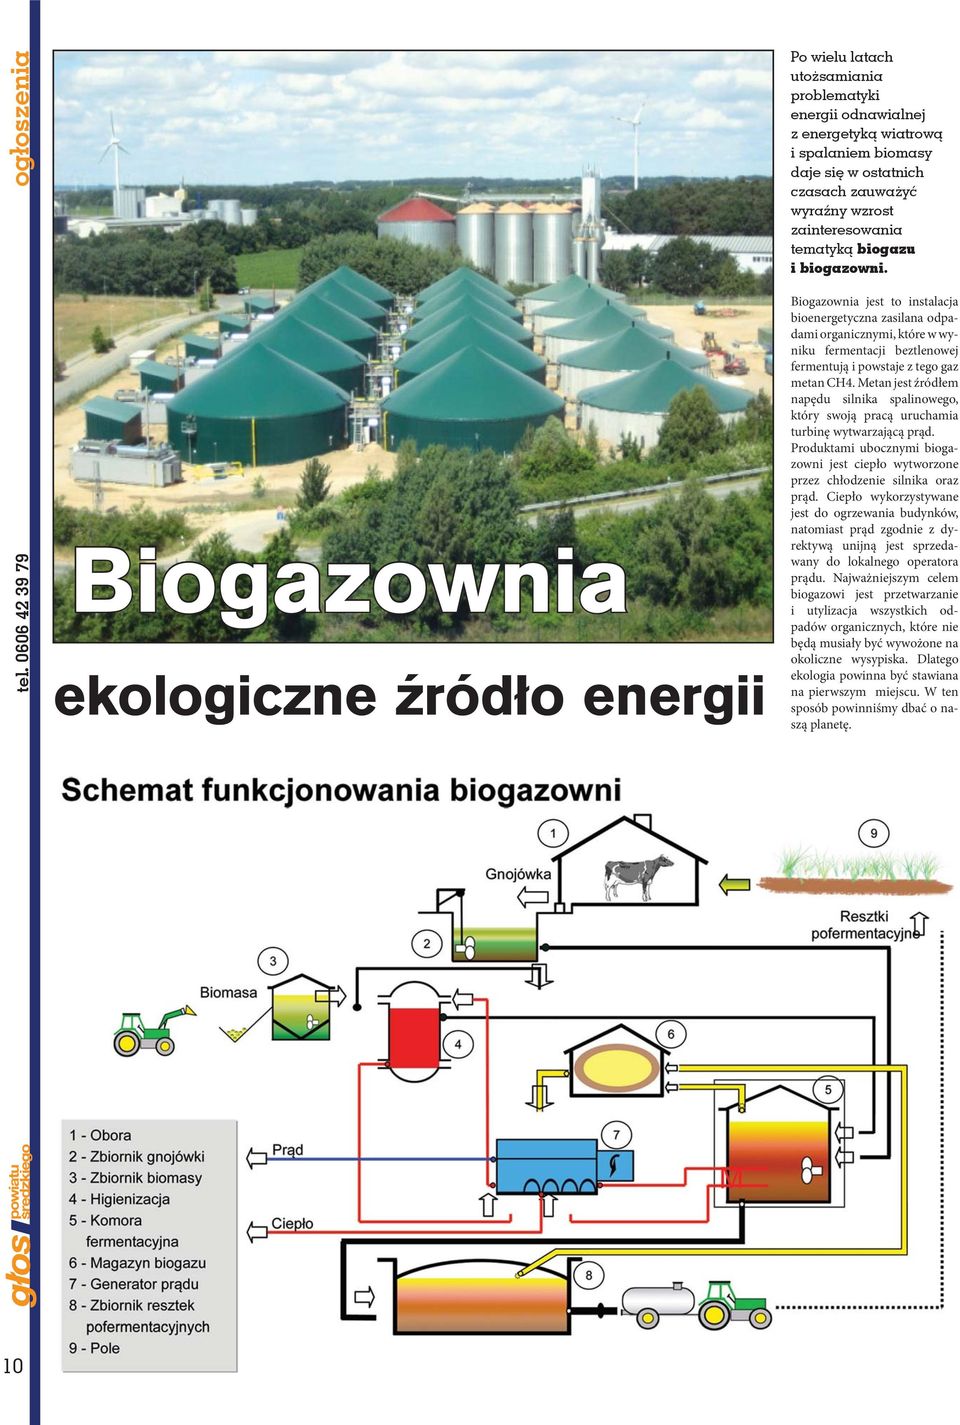 wyraźny wzrost zainteresowania tematyką biogazu i biogazowni.